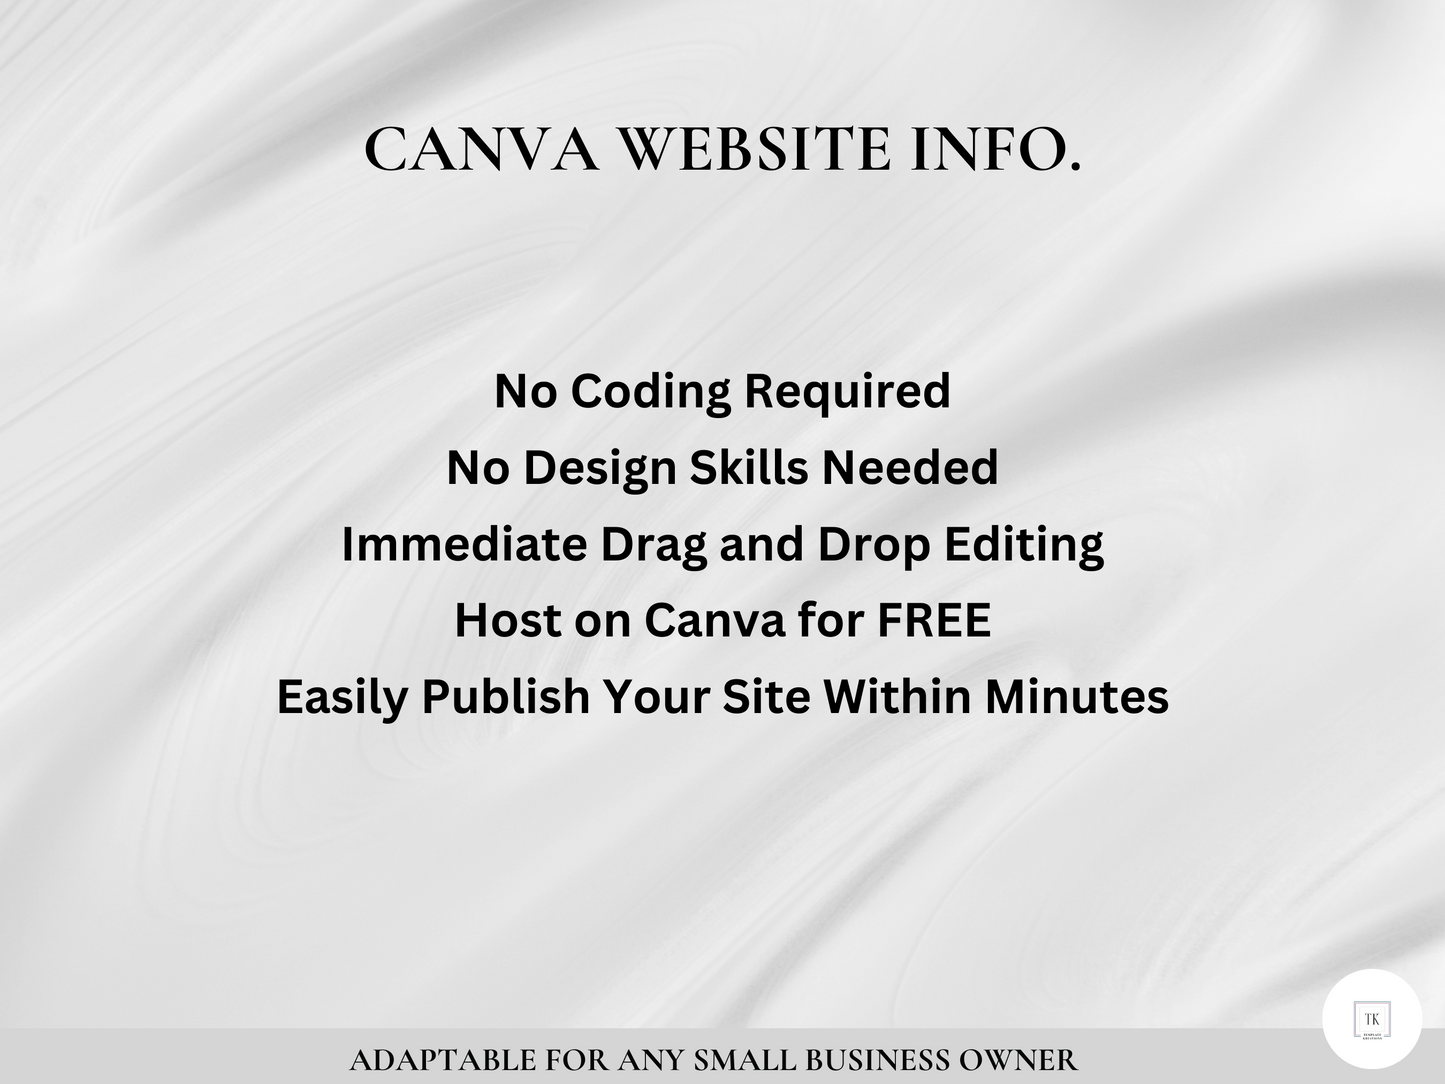 Sito Web Canva, sito Web di una pagina, sito Web Done For You, modello di sito Web per assistente virtuale, modelli di sito Web, sito Web per piccole imprese